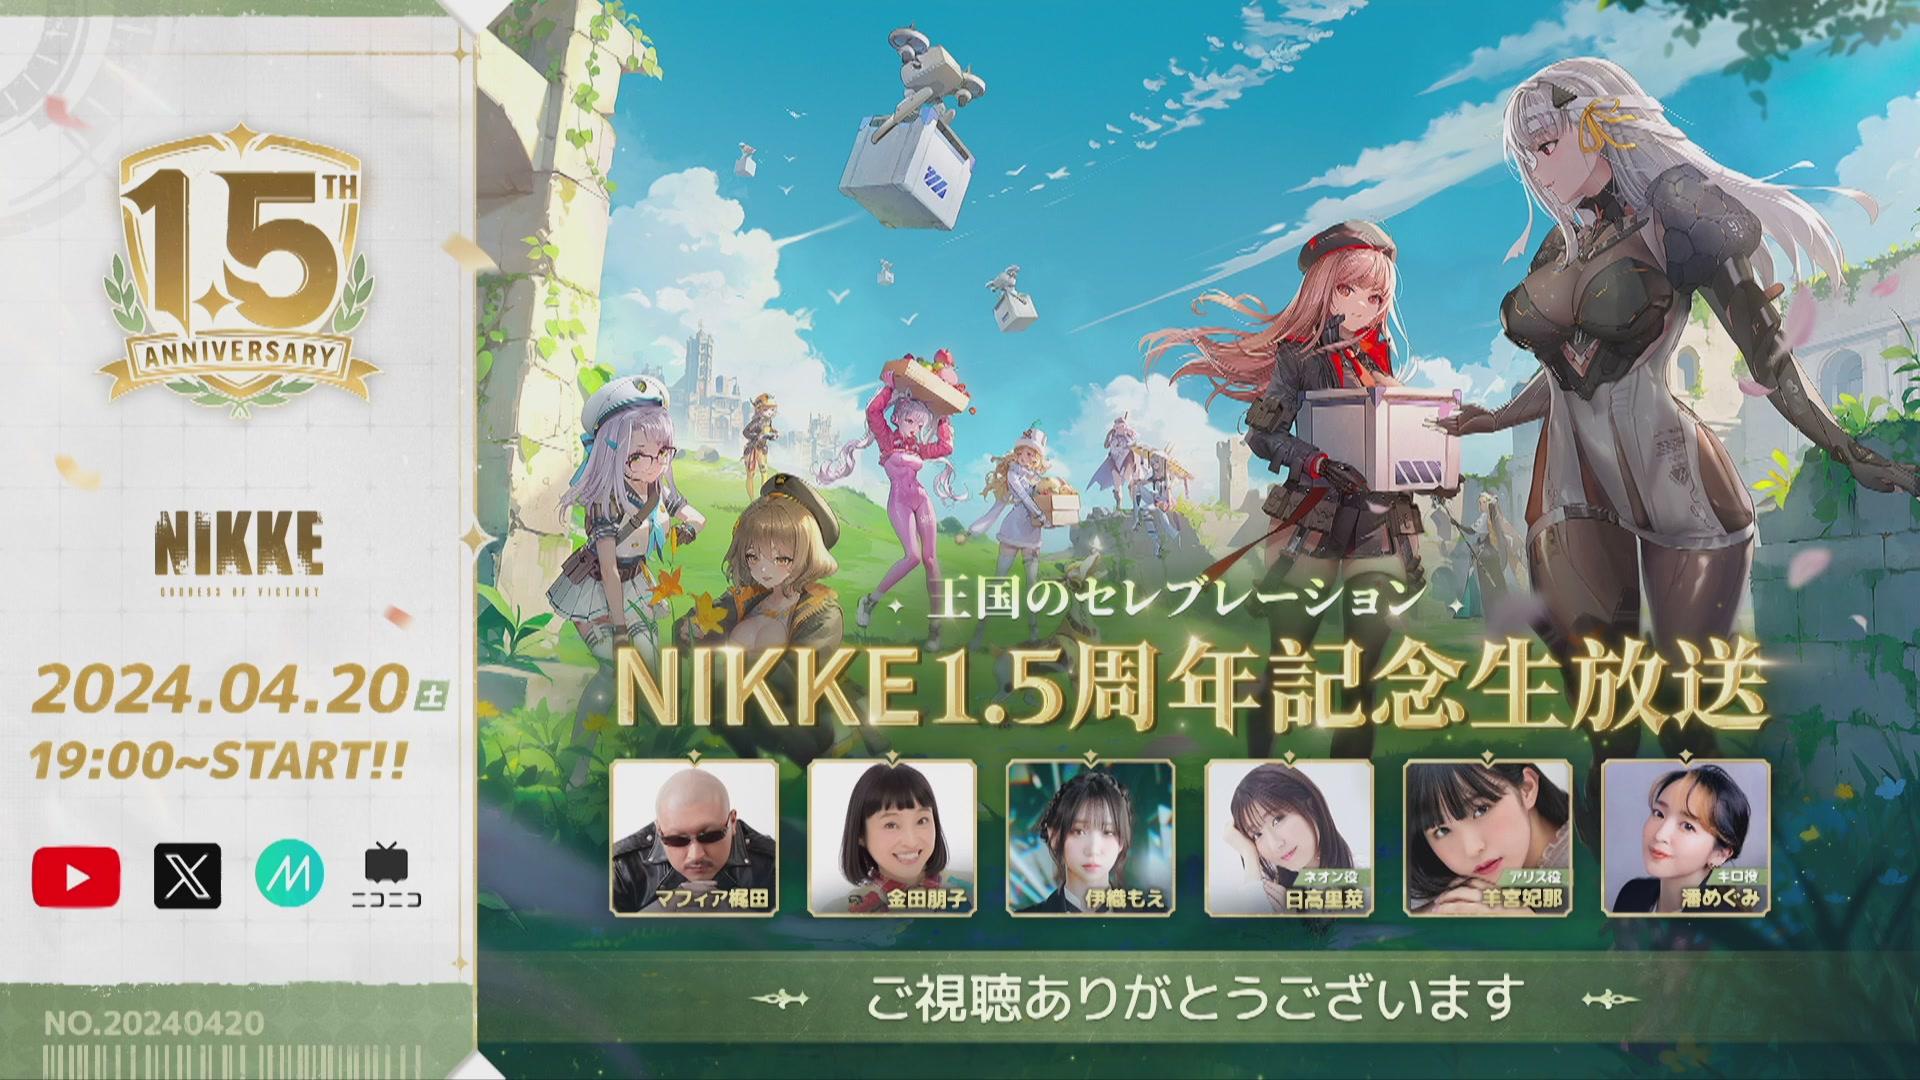 Profile Image for NIKKE_japan